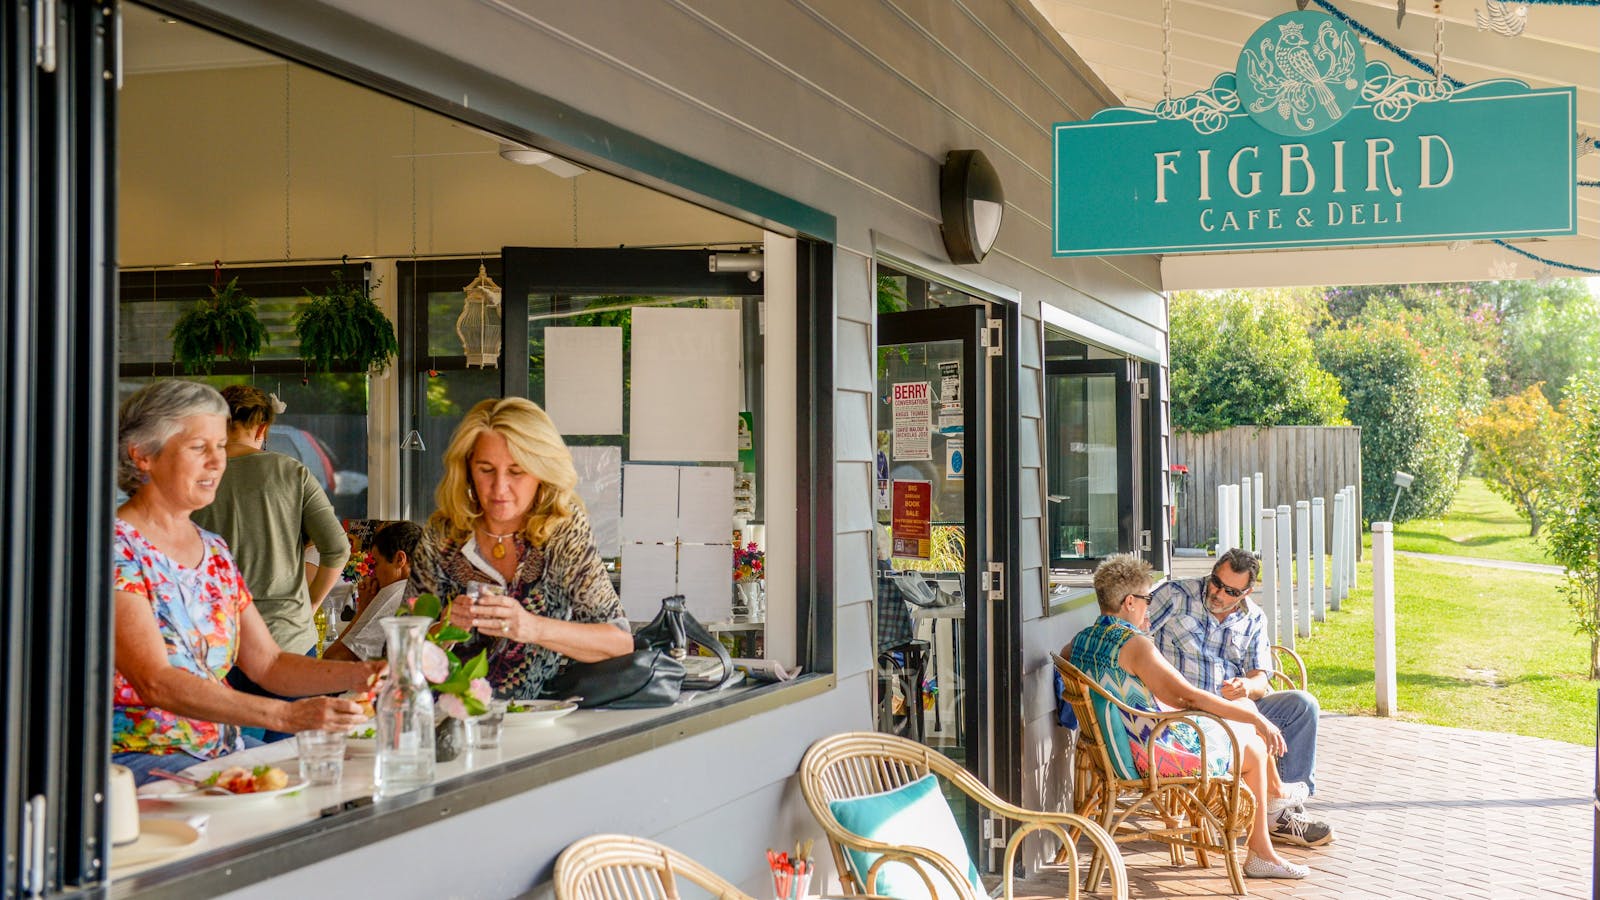 Firgbird Cafe